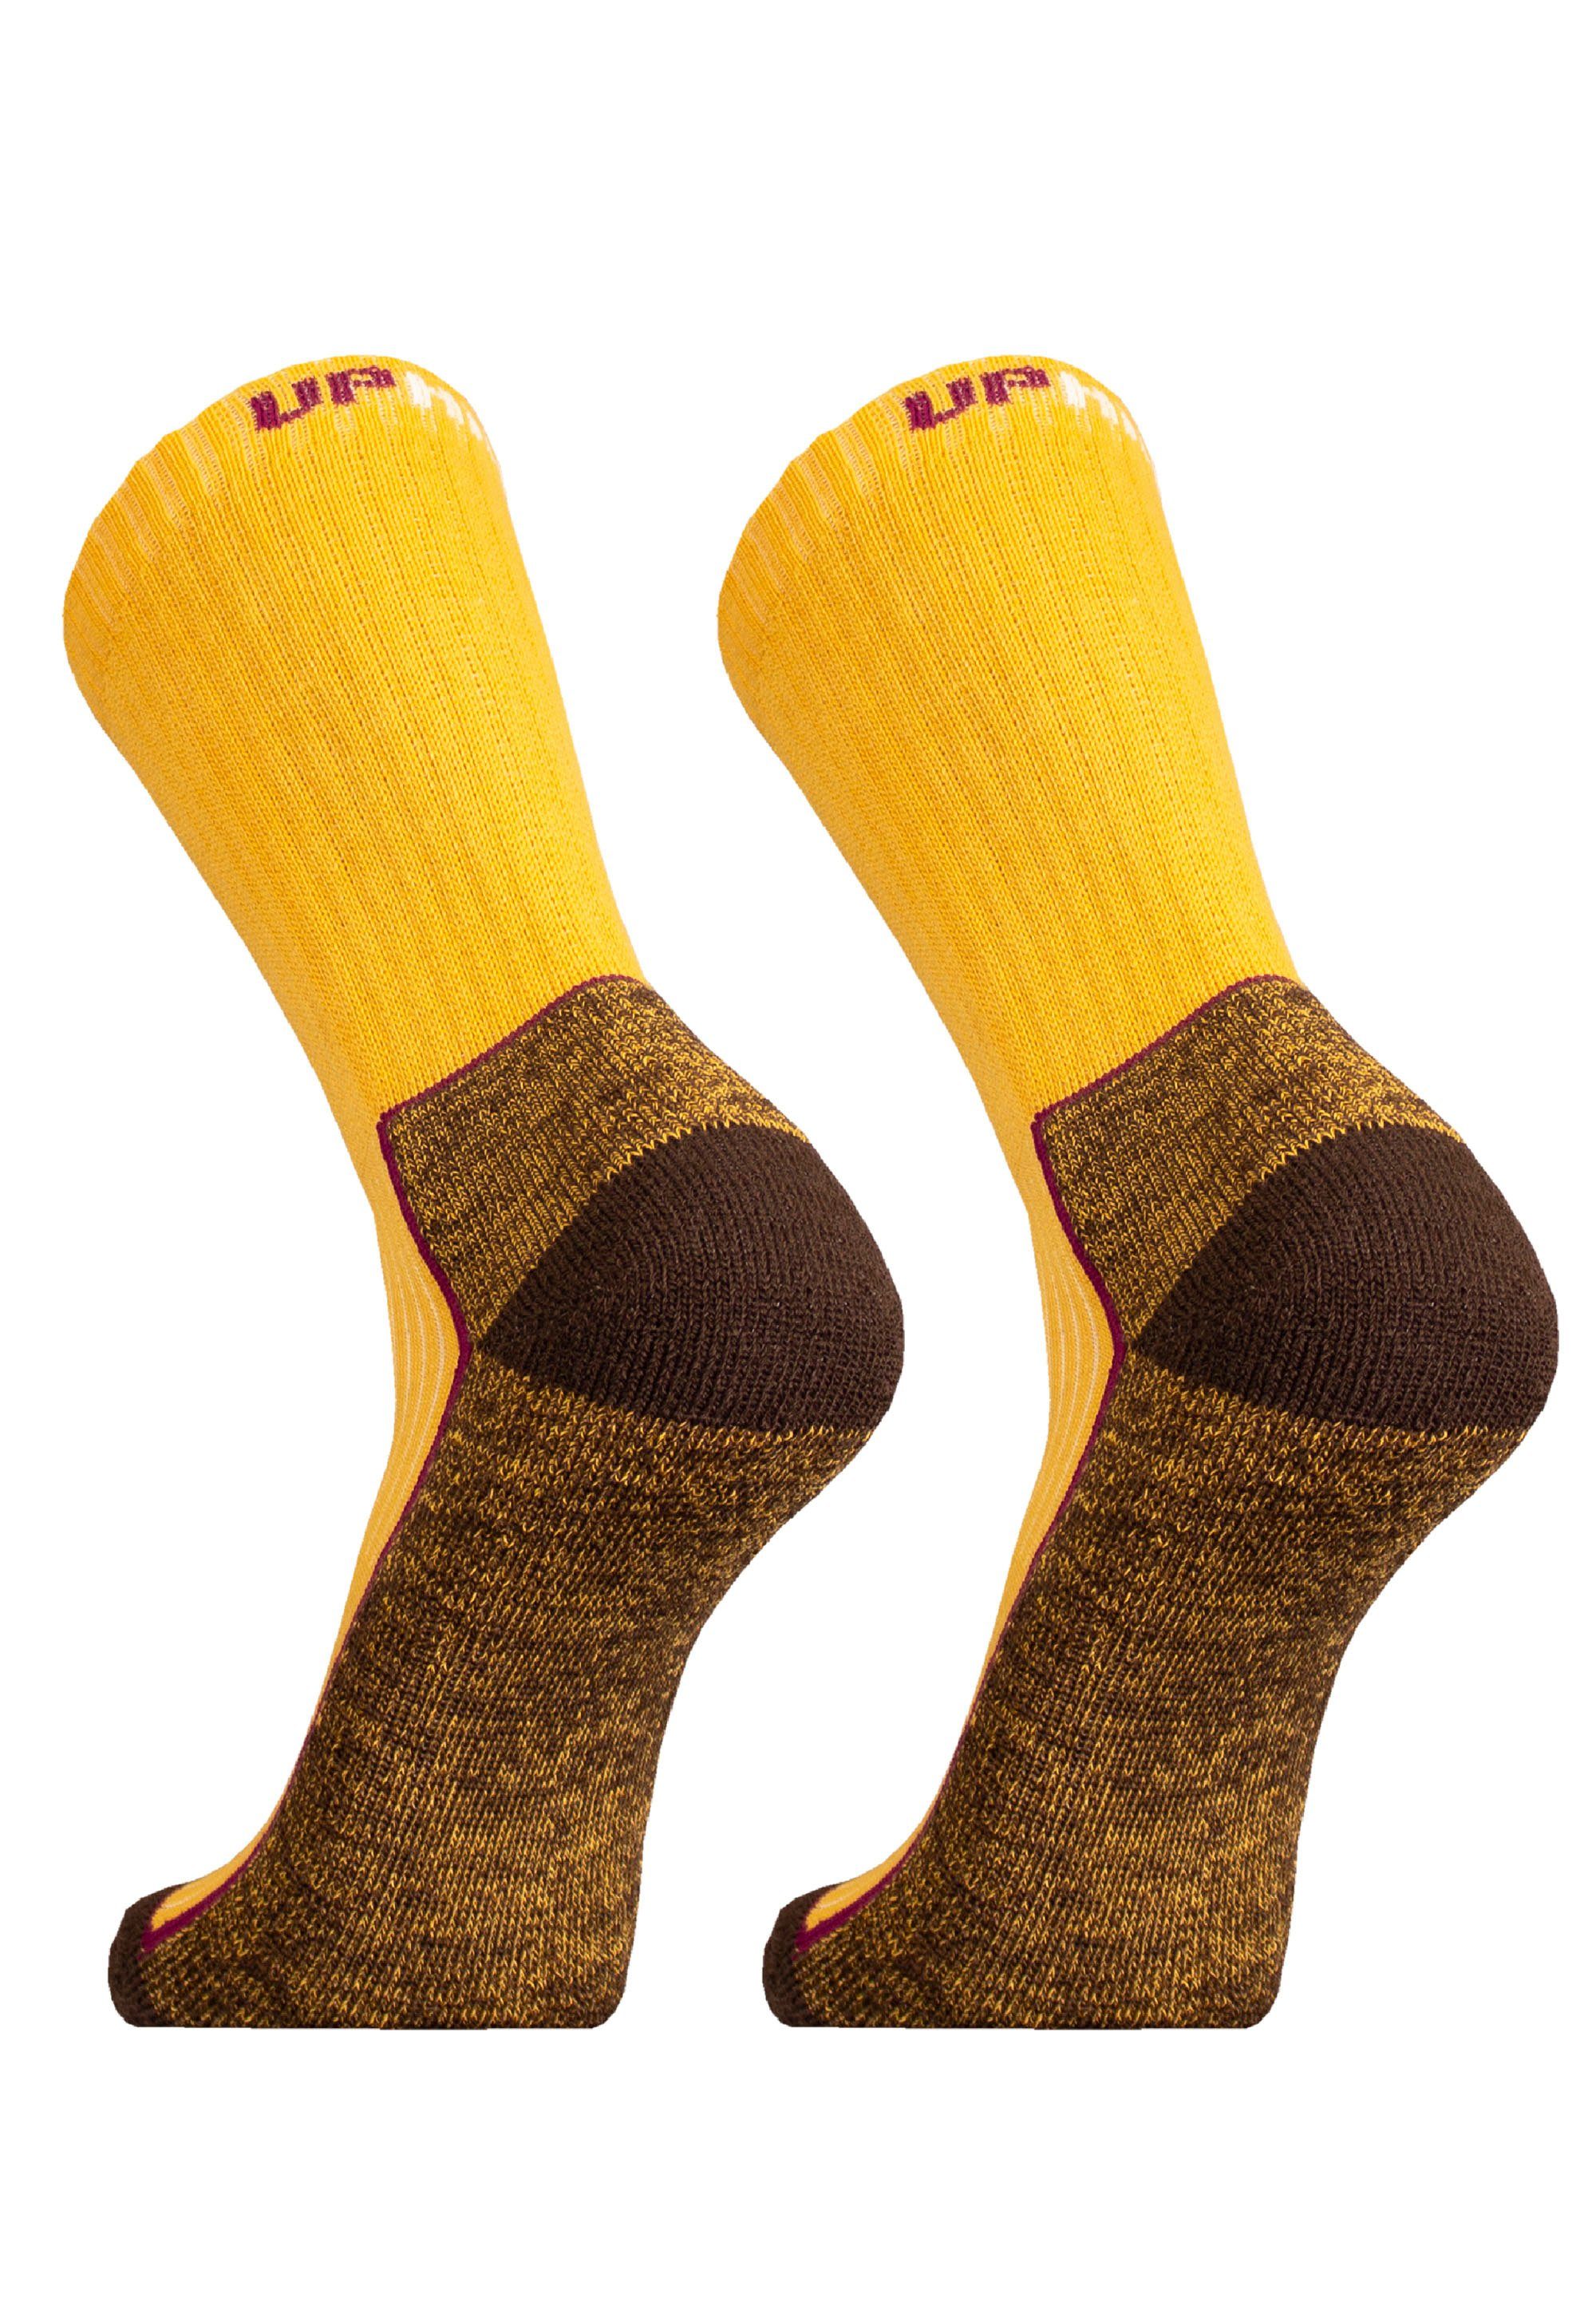 UphillSport Socken SAANA im (2-Paar) gelb 2er-Pack mit Flextech-Struktur